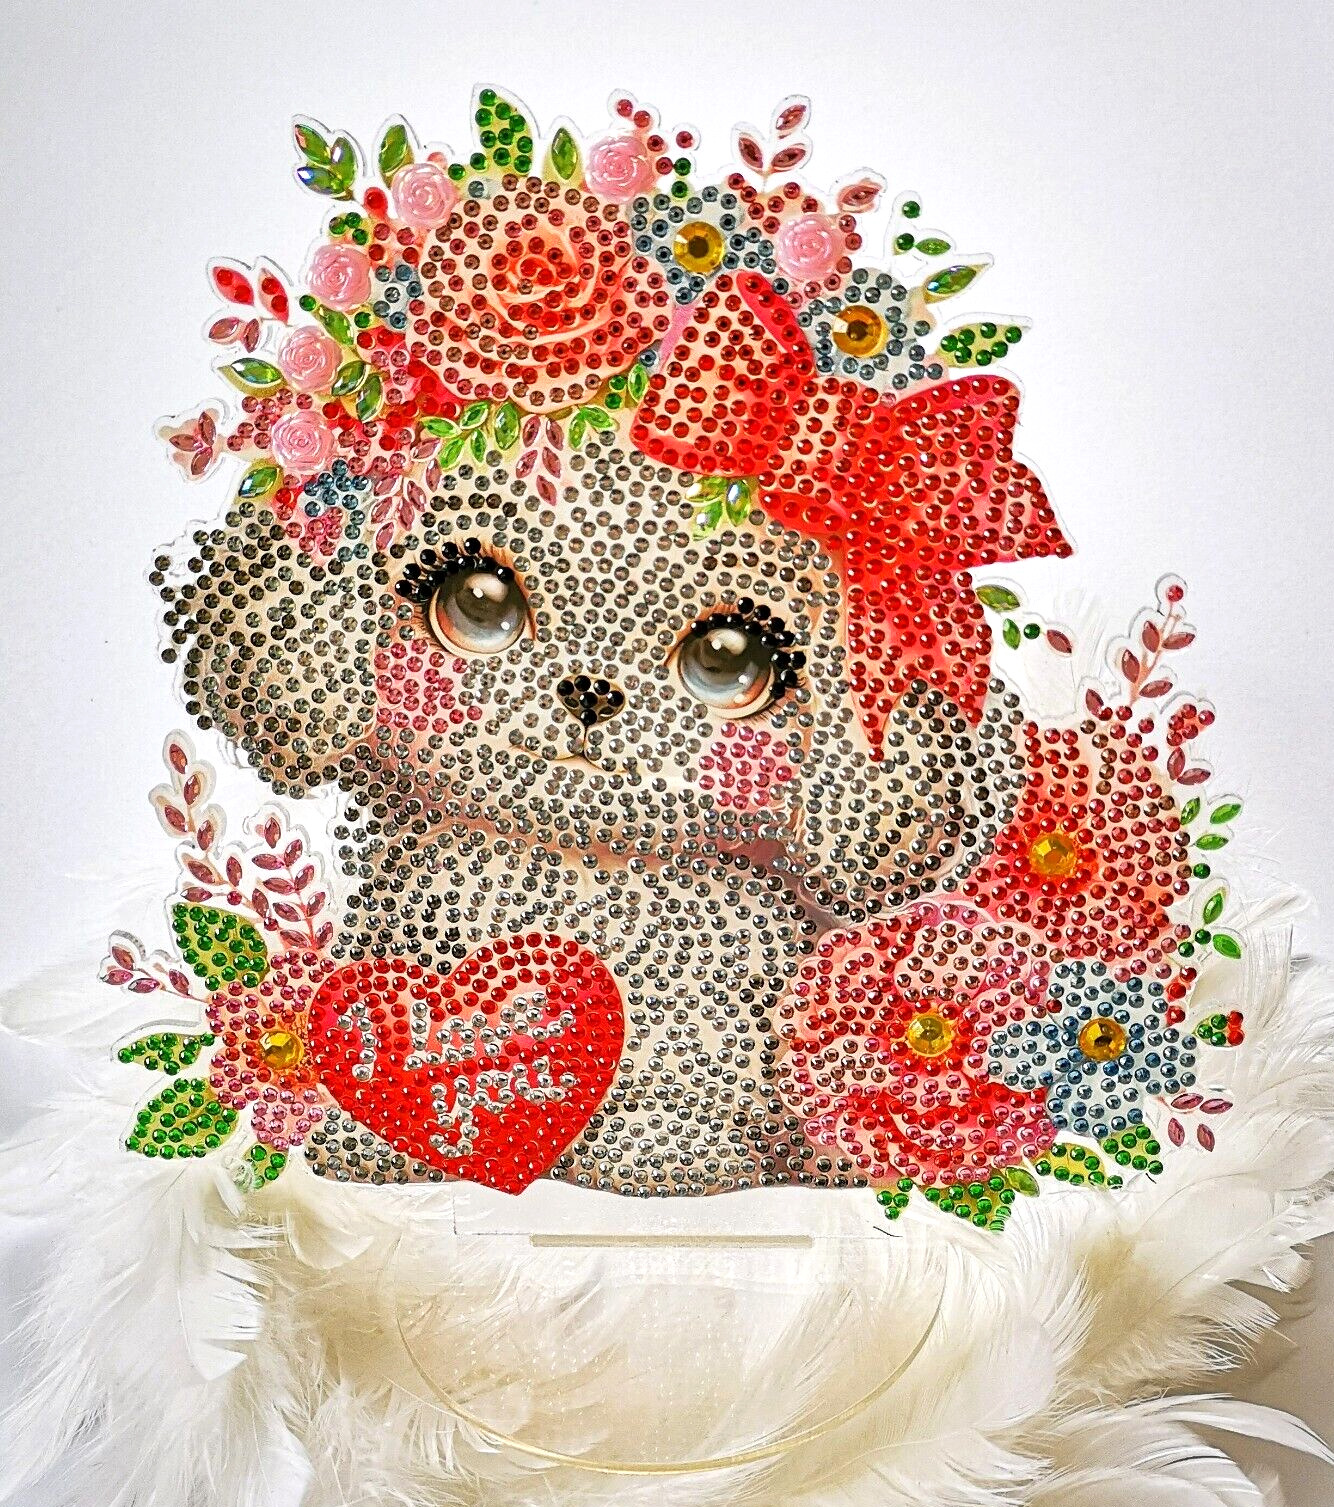 Wunderschöner Blumen-Herz-Hund, ein edler FensterTisch-Aufsteller, 20 x 20 cm.